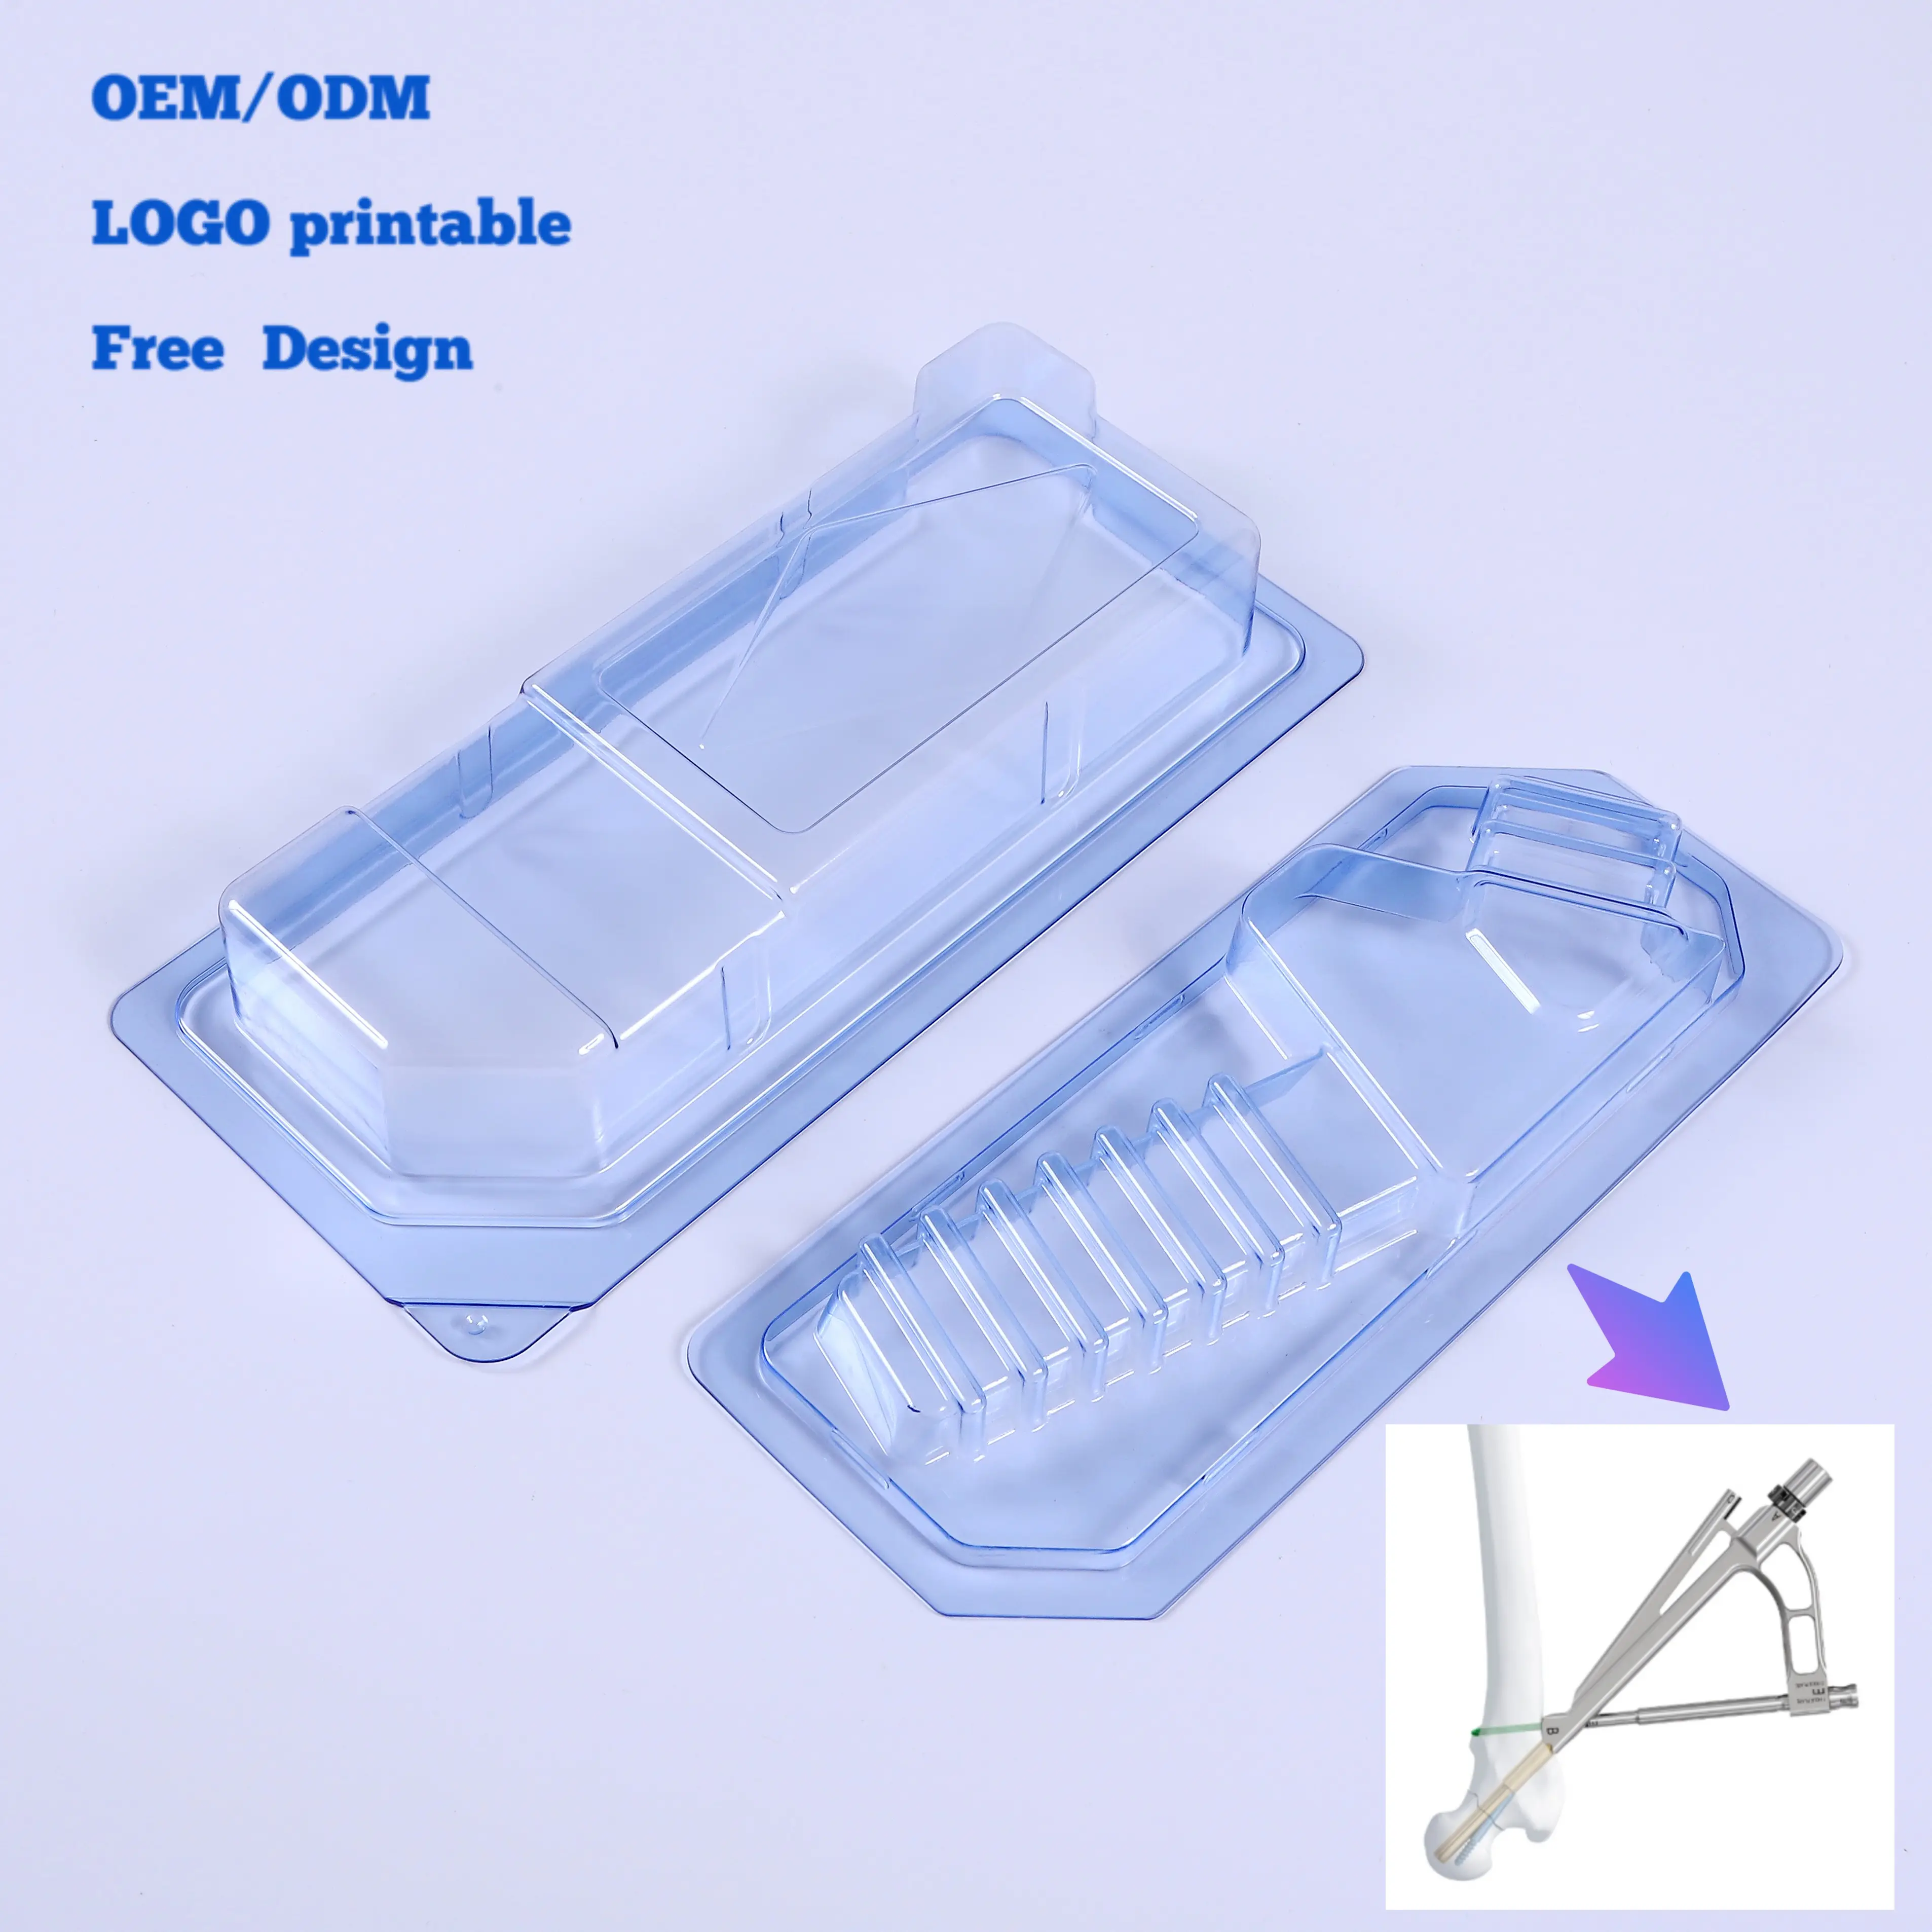 Fabricant OEM/ODM Sortie Boîte en plastique dur thermoformée PETG Blister médical pour médicaments